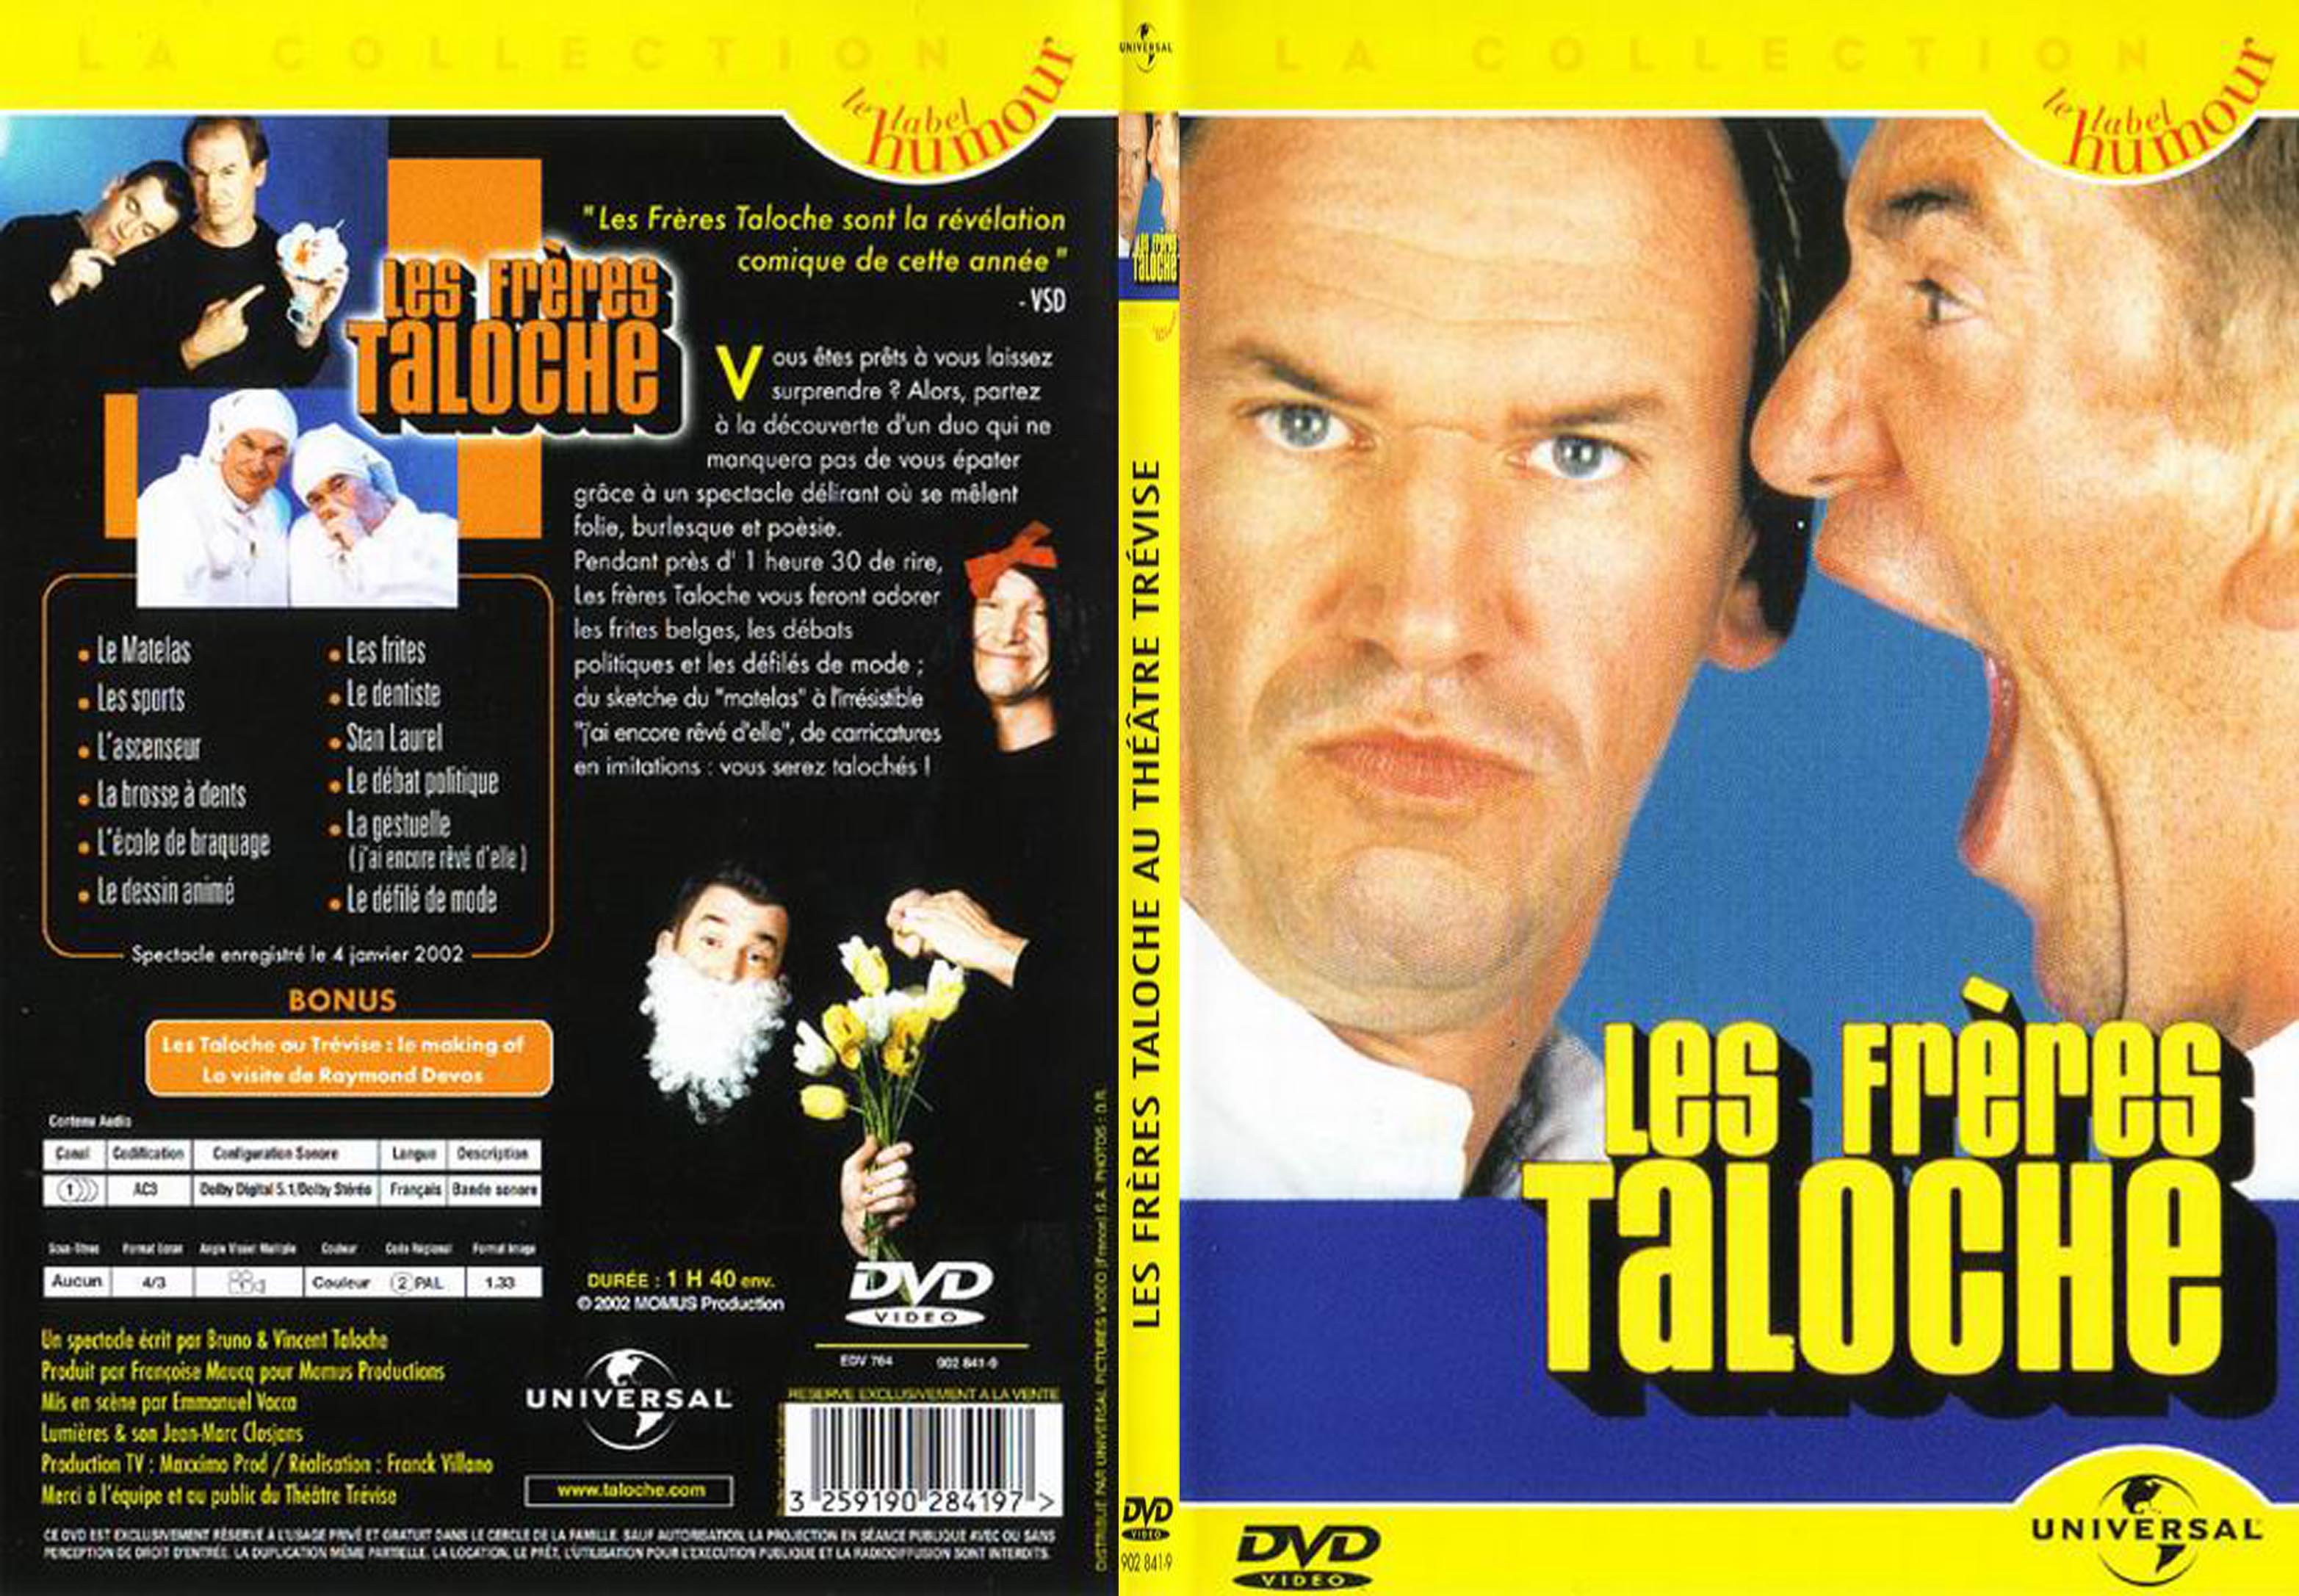 Jaquette DVD Les freres Taloche au theatre Trevise - SLIM